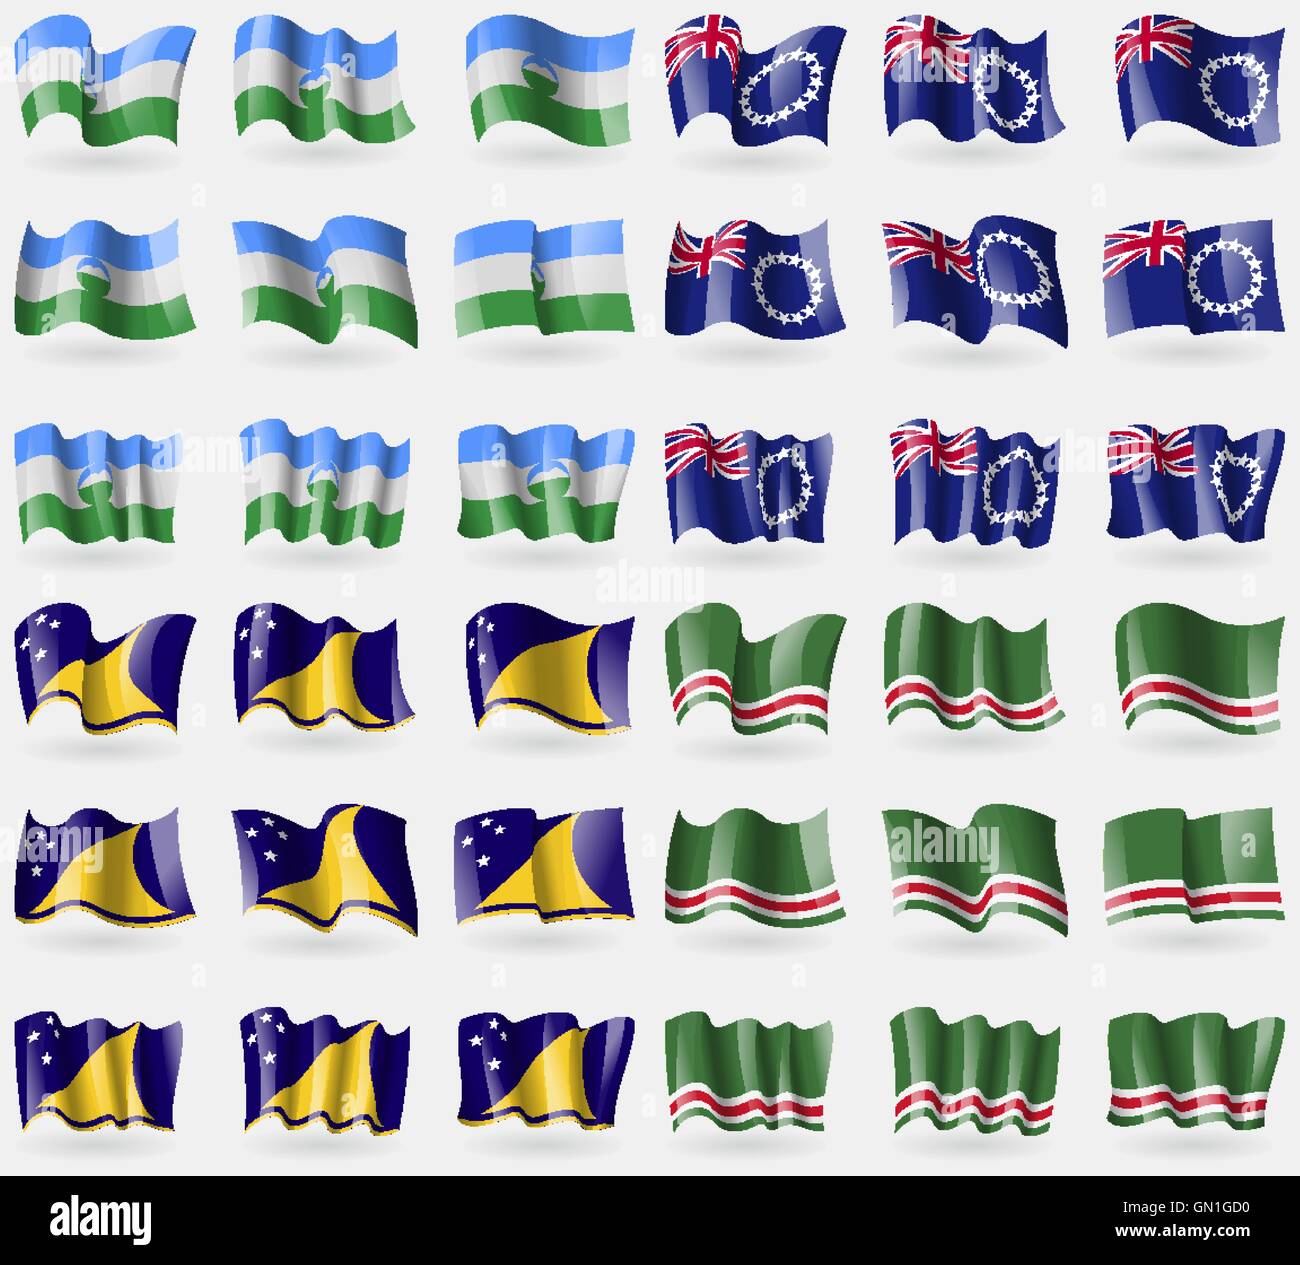 KabardinoBalkaria, Îles Cook, les îles Tokélaou, République tchétchène d'Itchkérie. Ensemble de 36 drapeaux des pays du monde. Vector Illustration de Vecteur